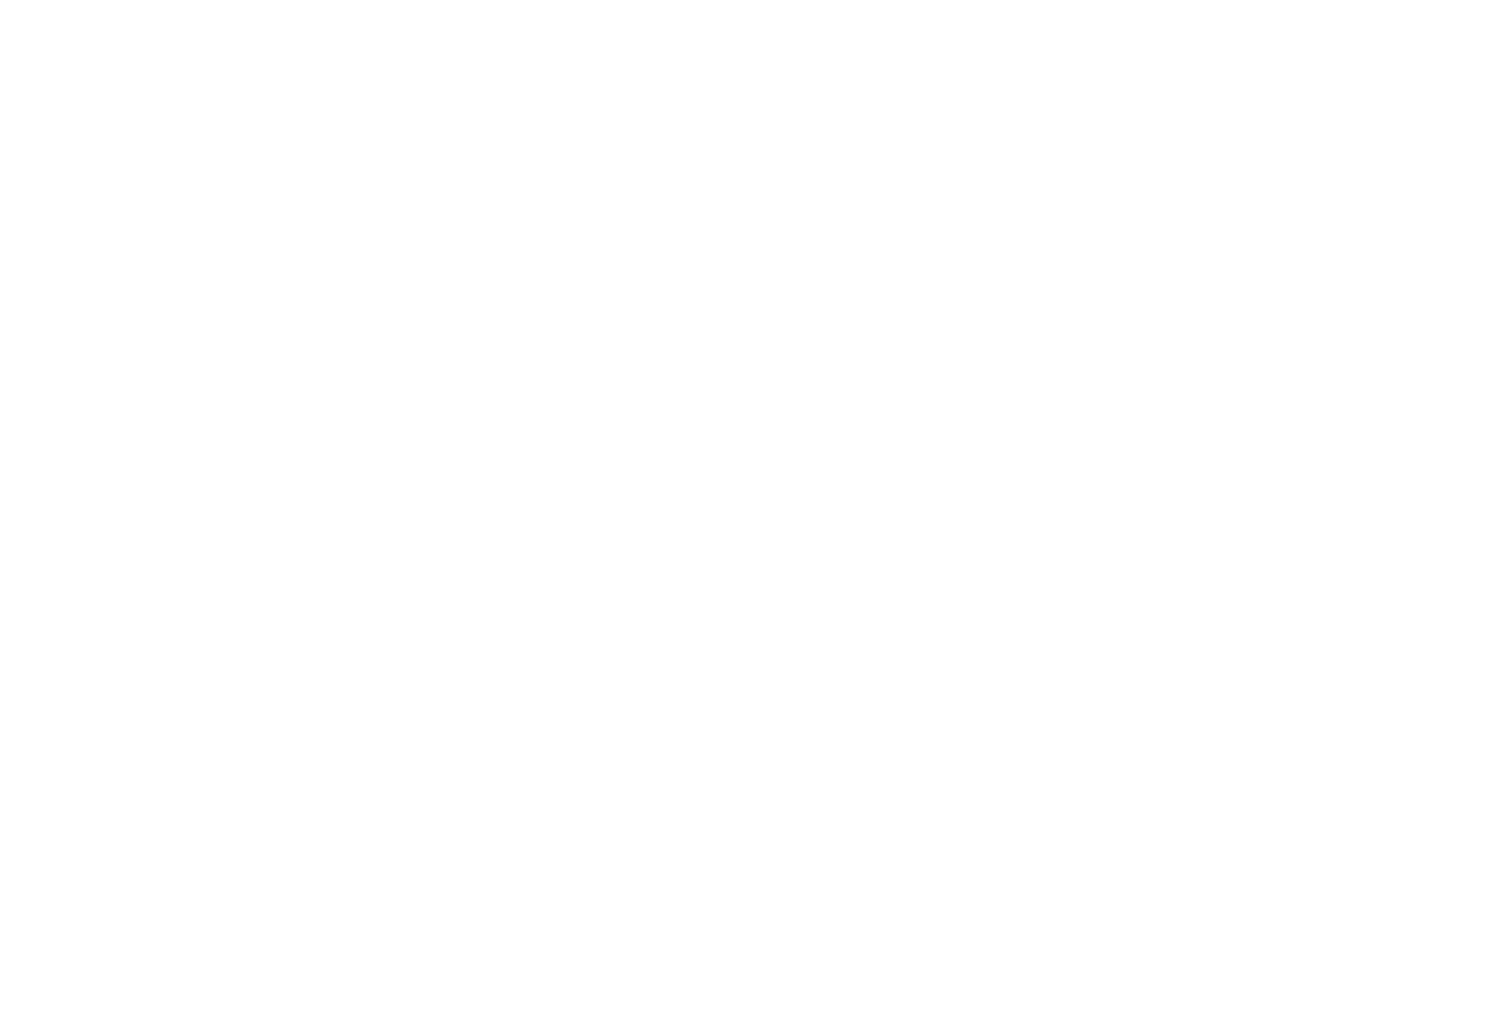 Footprints In The Field